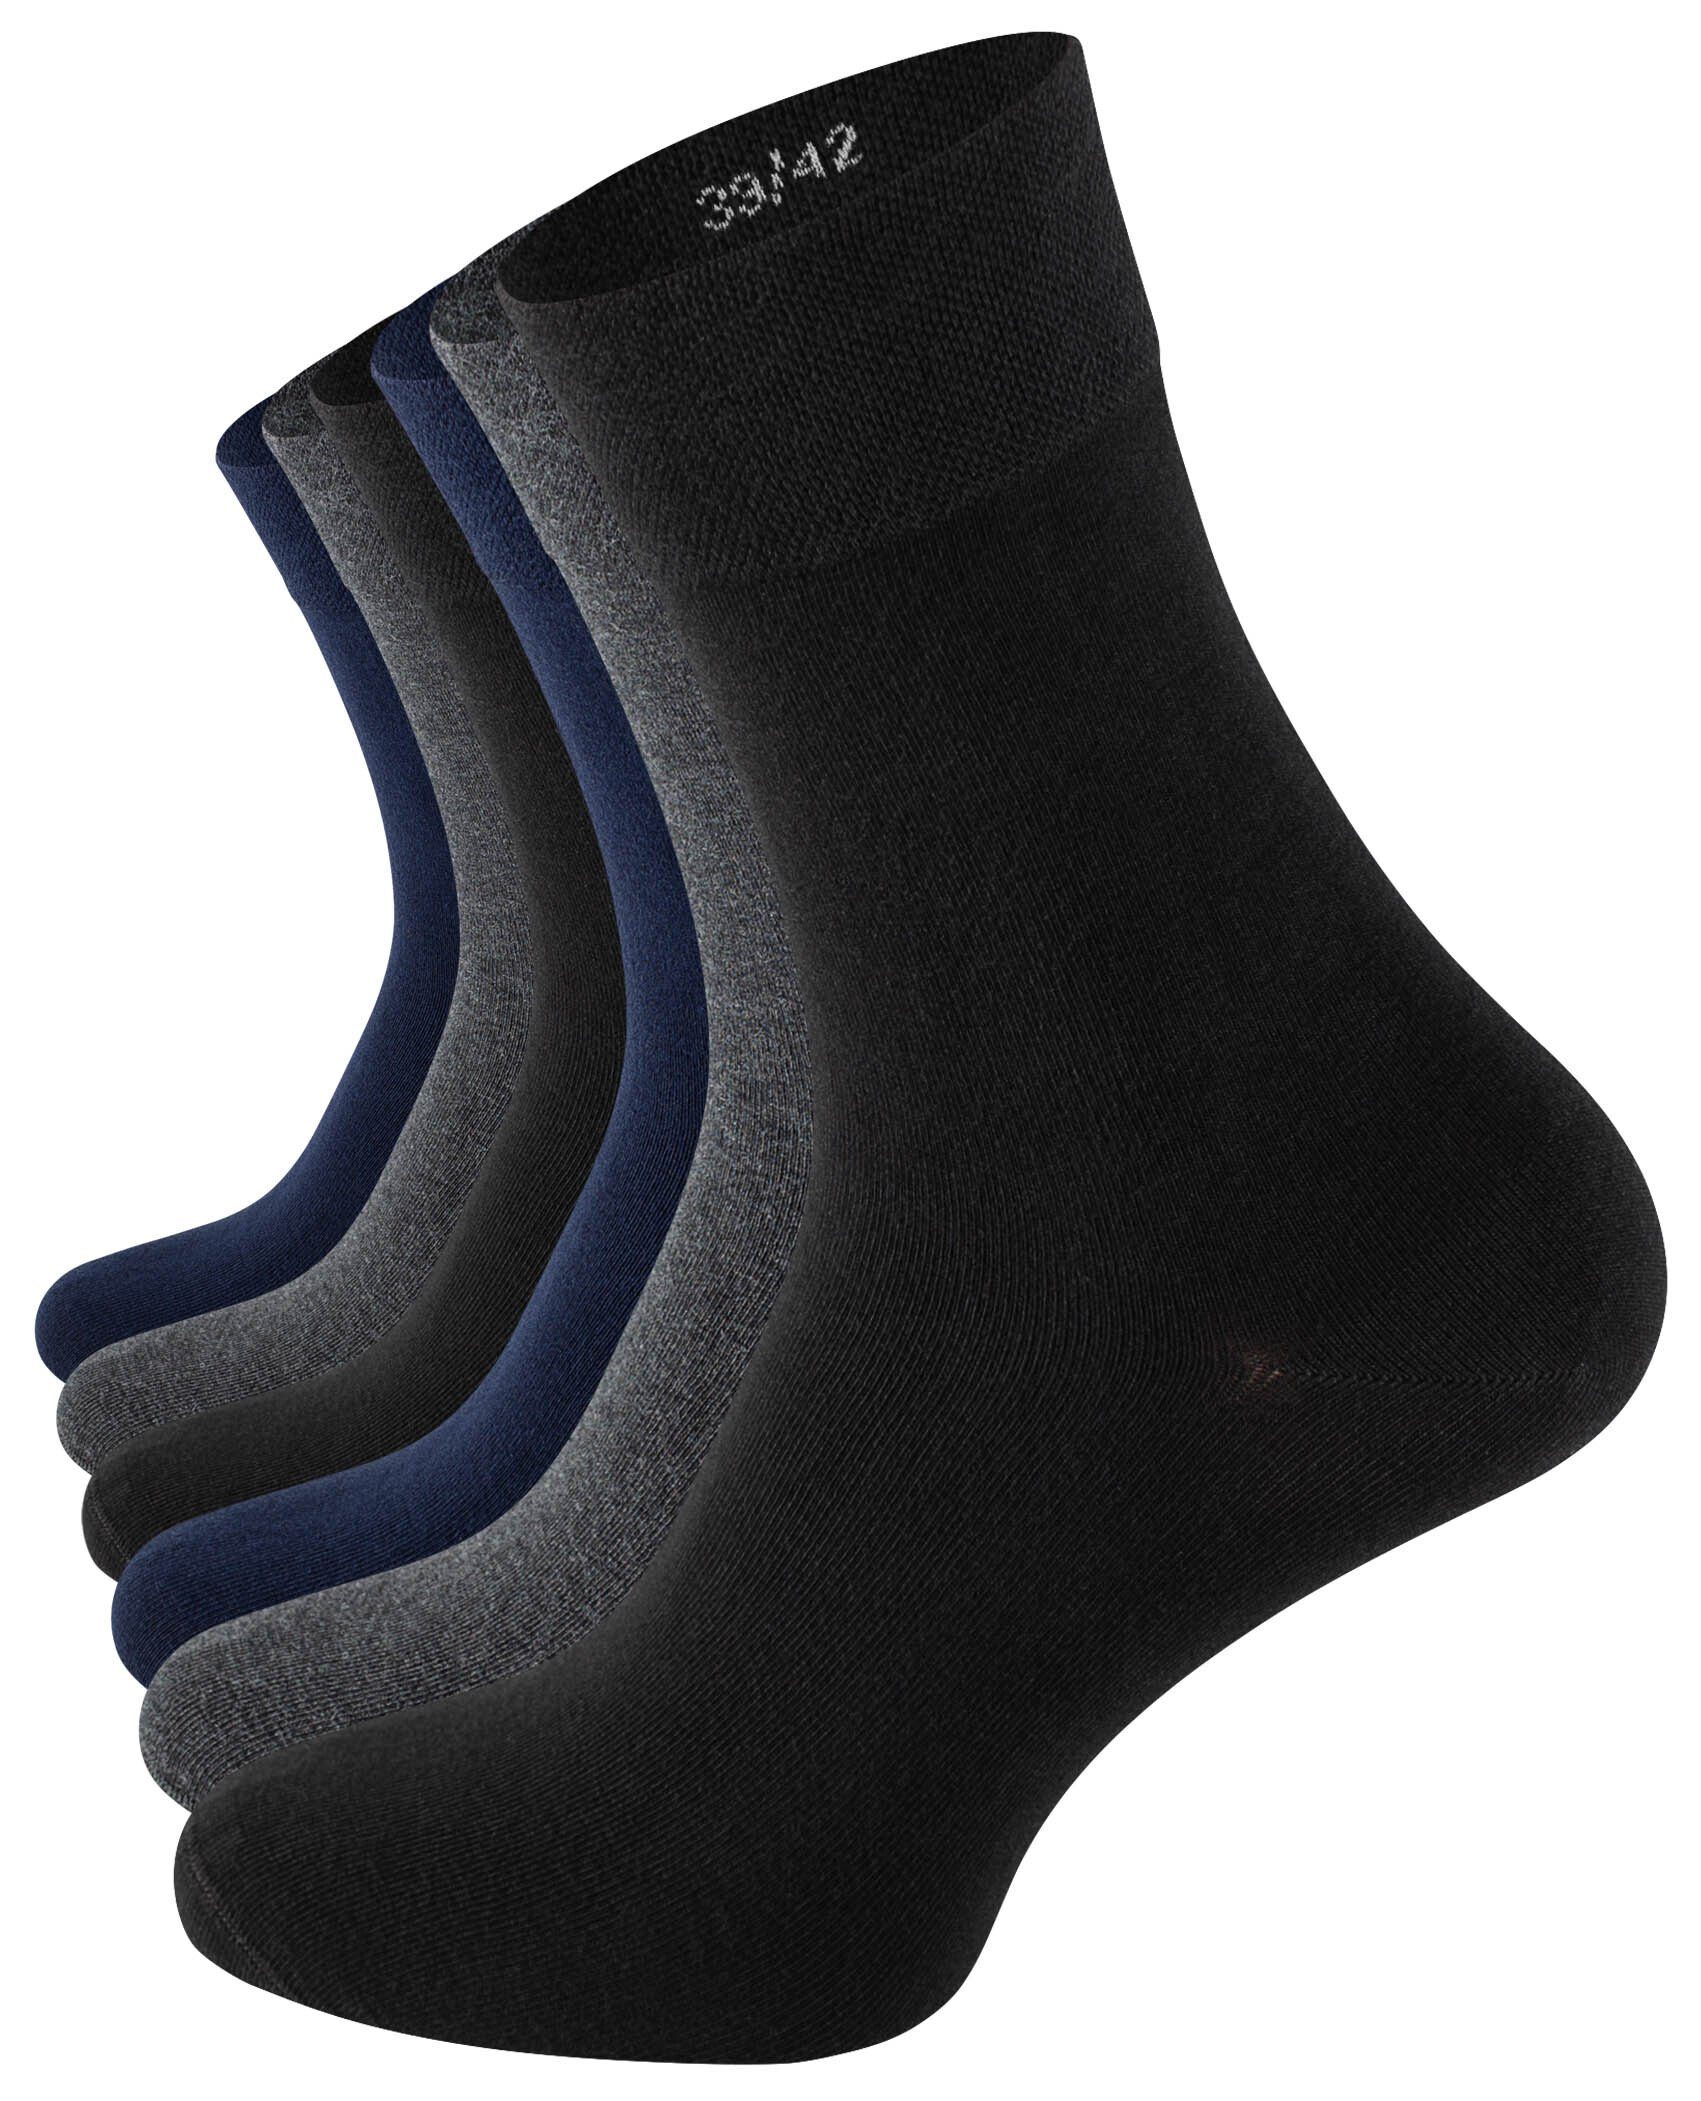 Clark Crown® Socken (6-Paar) in angenehmer Baumwollqualität gemischt